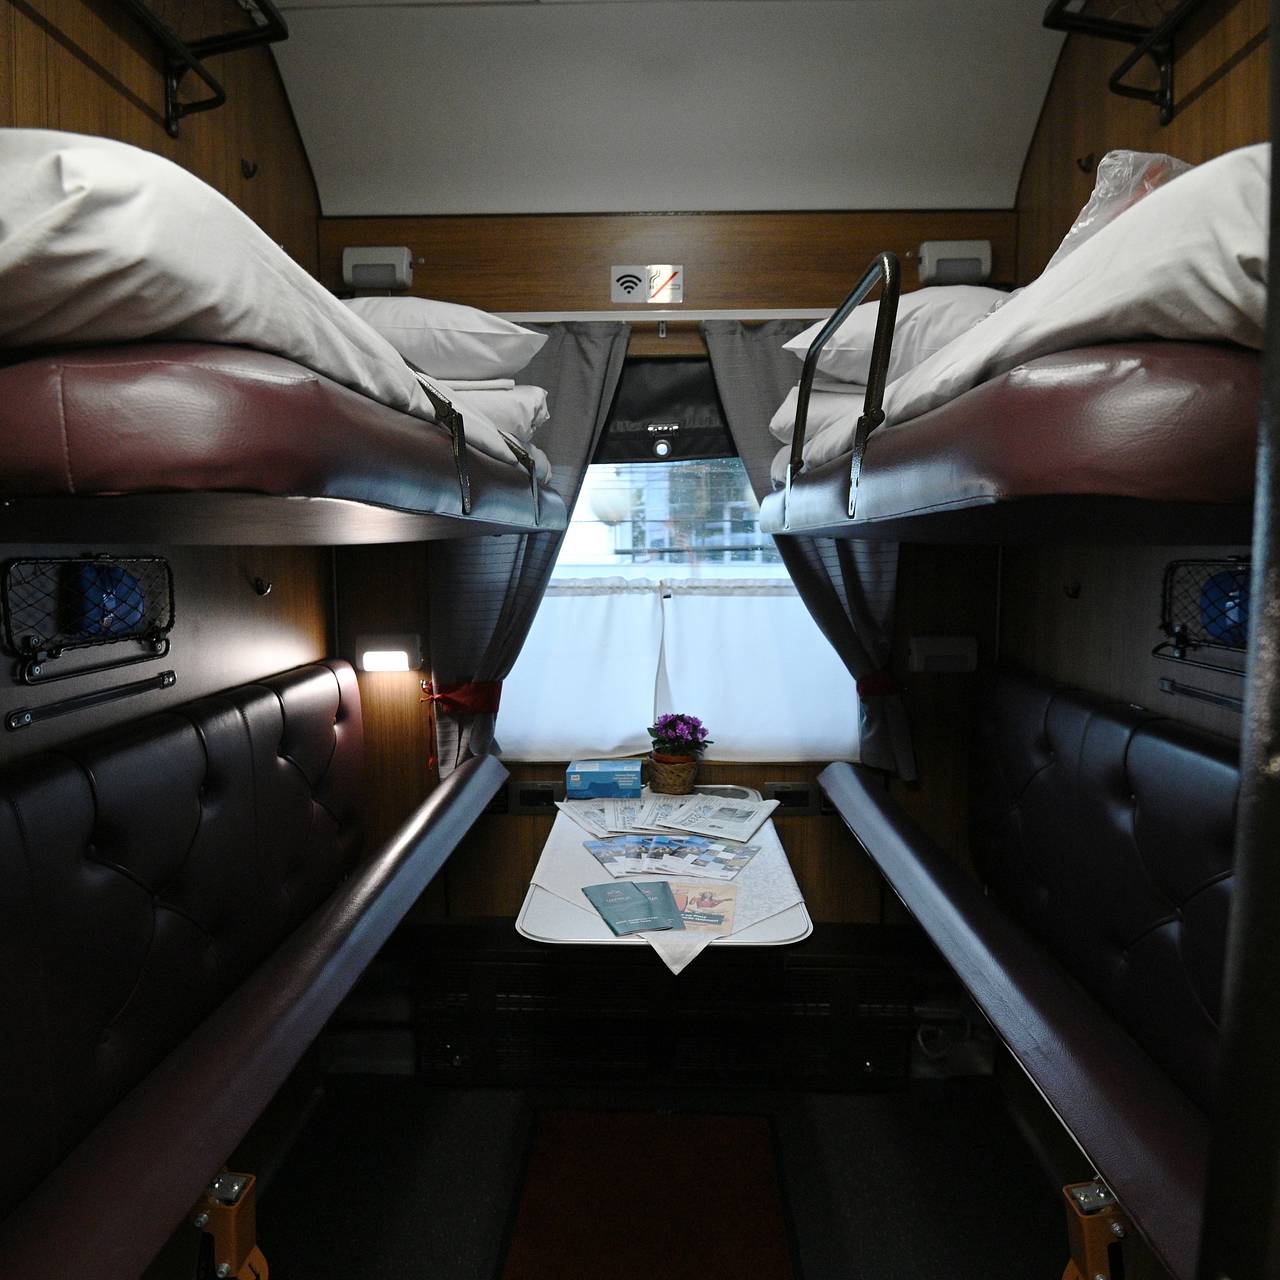 Правила размещения багажа в купе поезда пассажиром верхней полки